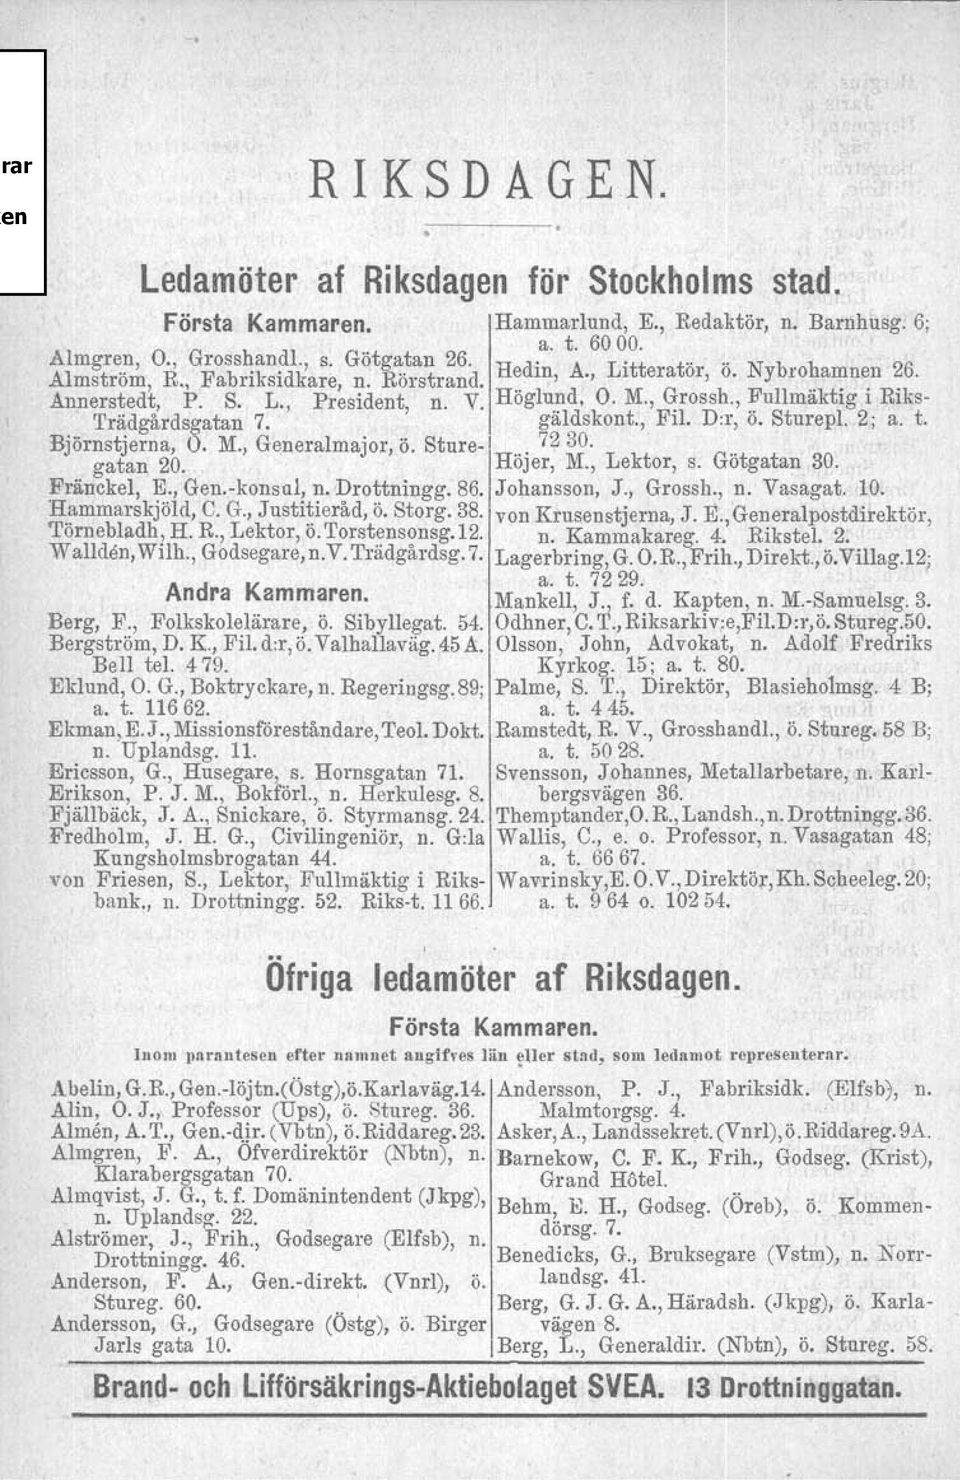 galdskont., FIL D:r, o. Sturepl. 2; a. t. Björnstjerna, O. M., Generalmajor, ö. Sture- 72 30. gatan 20. " Höjer, M., Lektor, s. Götgatan 30.,Fränckel, E., Gen.vkonsul, n. Drottningg. 86. Johansson, J.